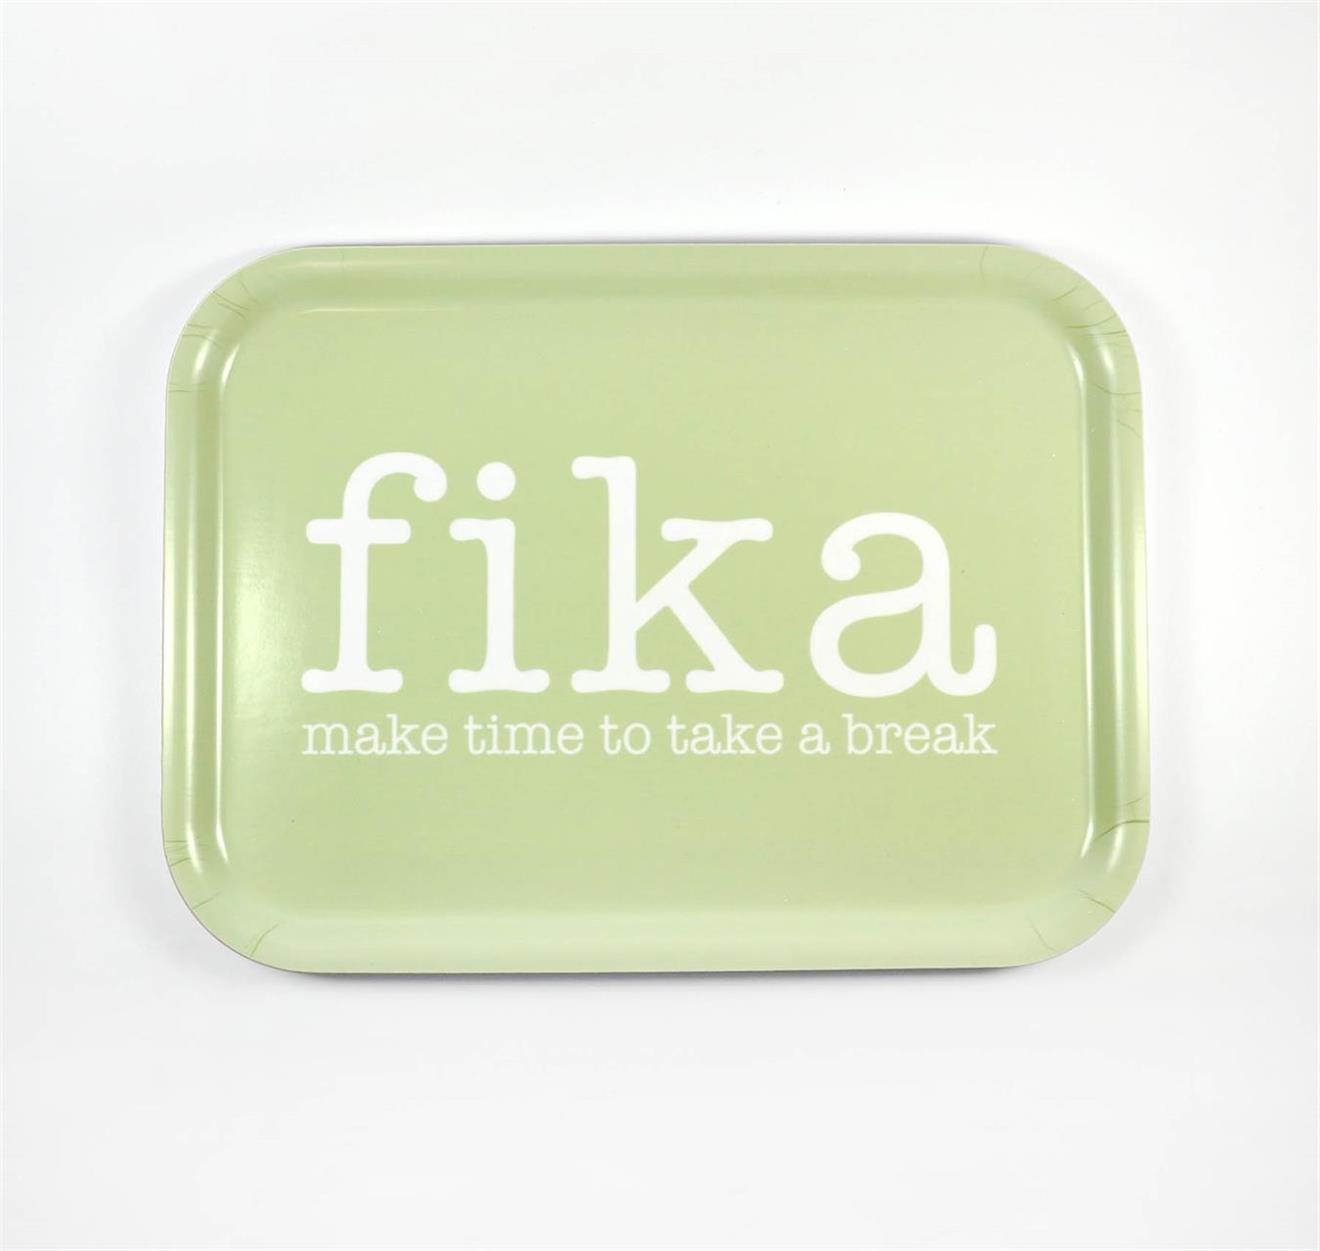 Bricka 27x20 cm, Make time Fika, grön/vit text